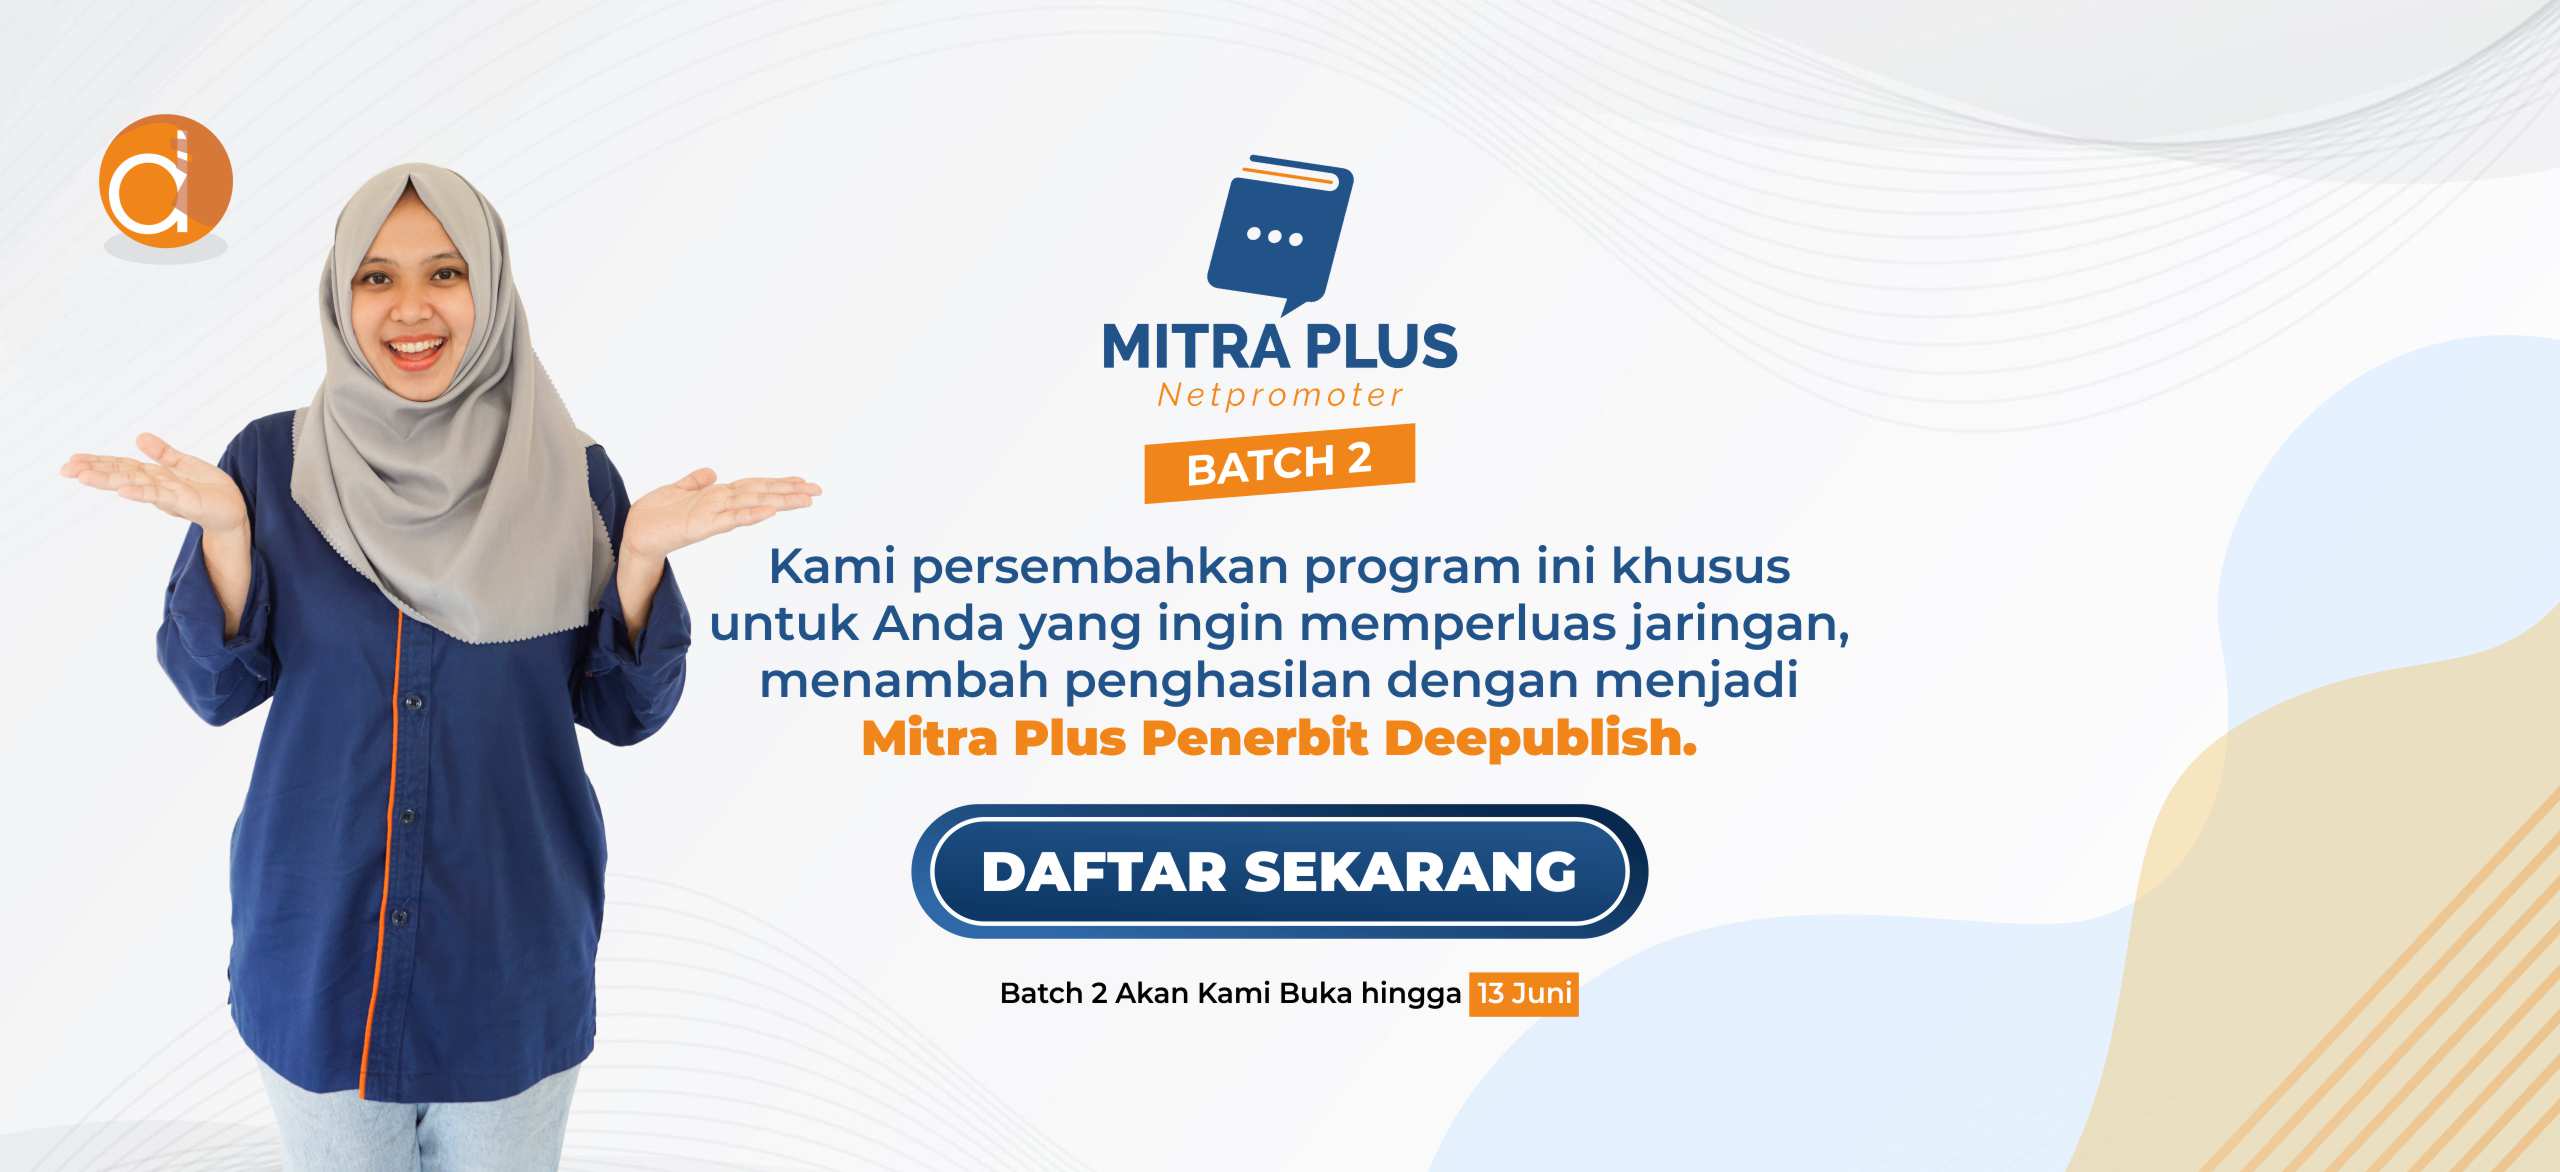 Mitra Plus